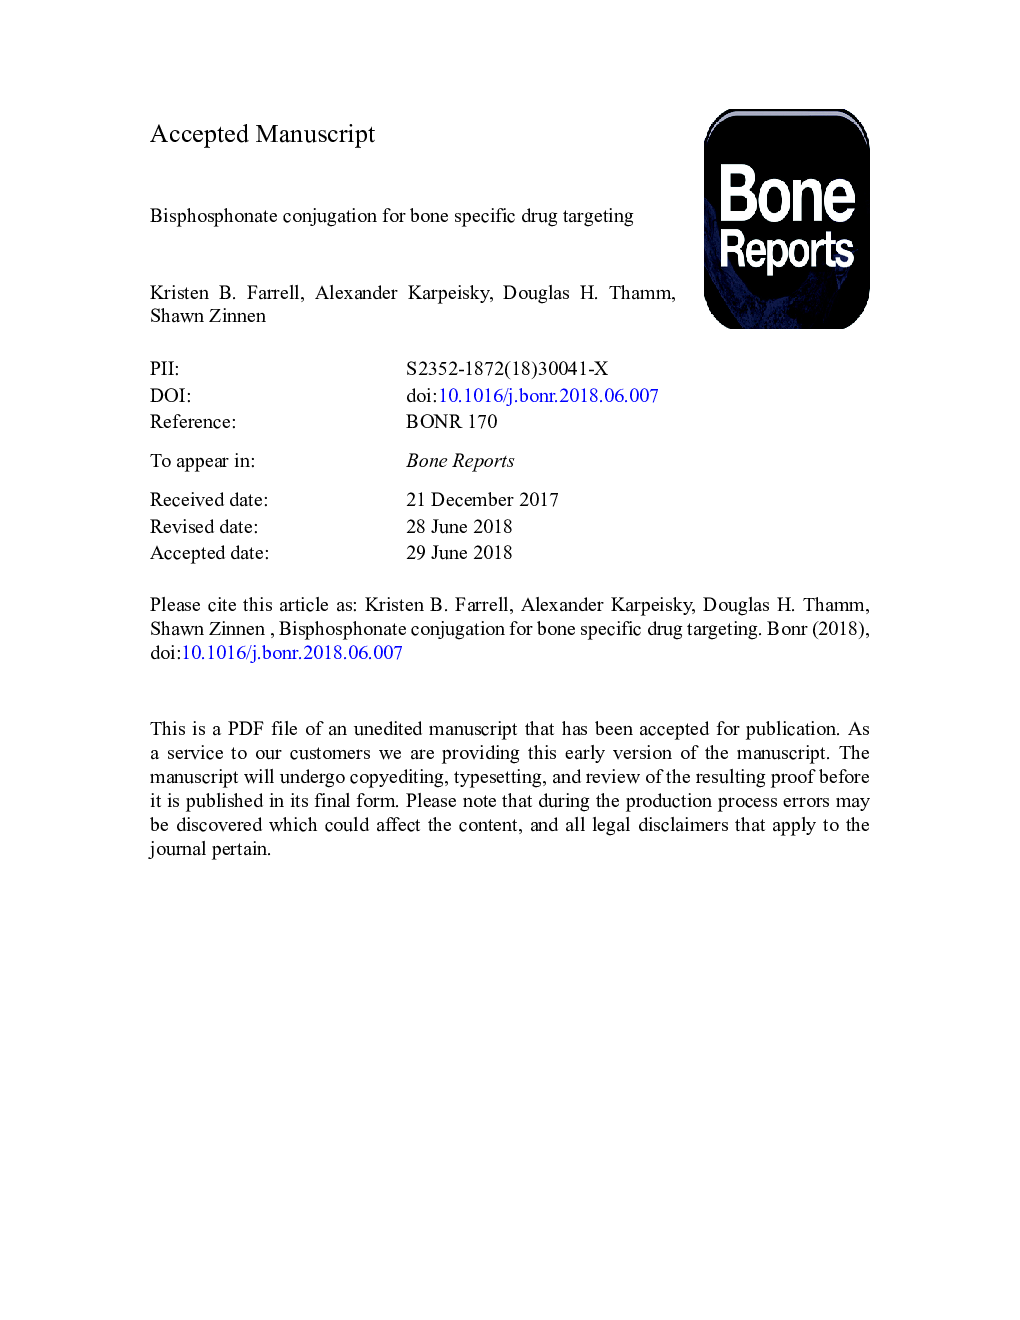 Bisphosphonate conjugation for bone specific drug targeting